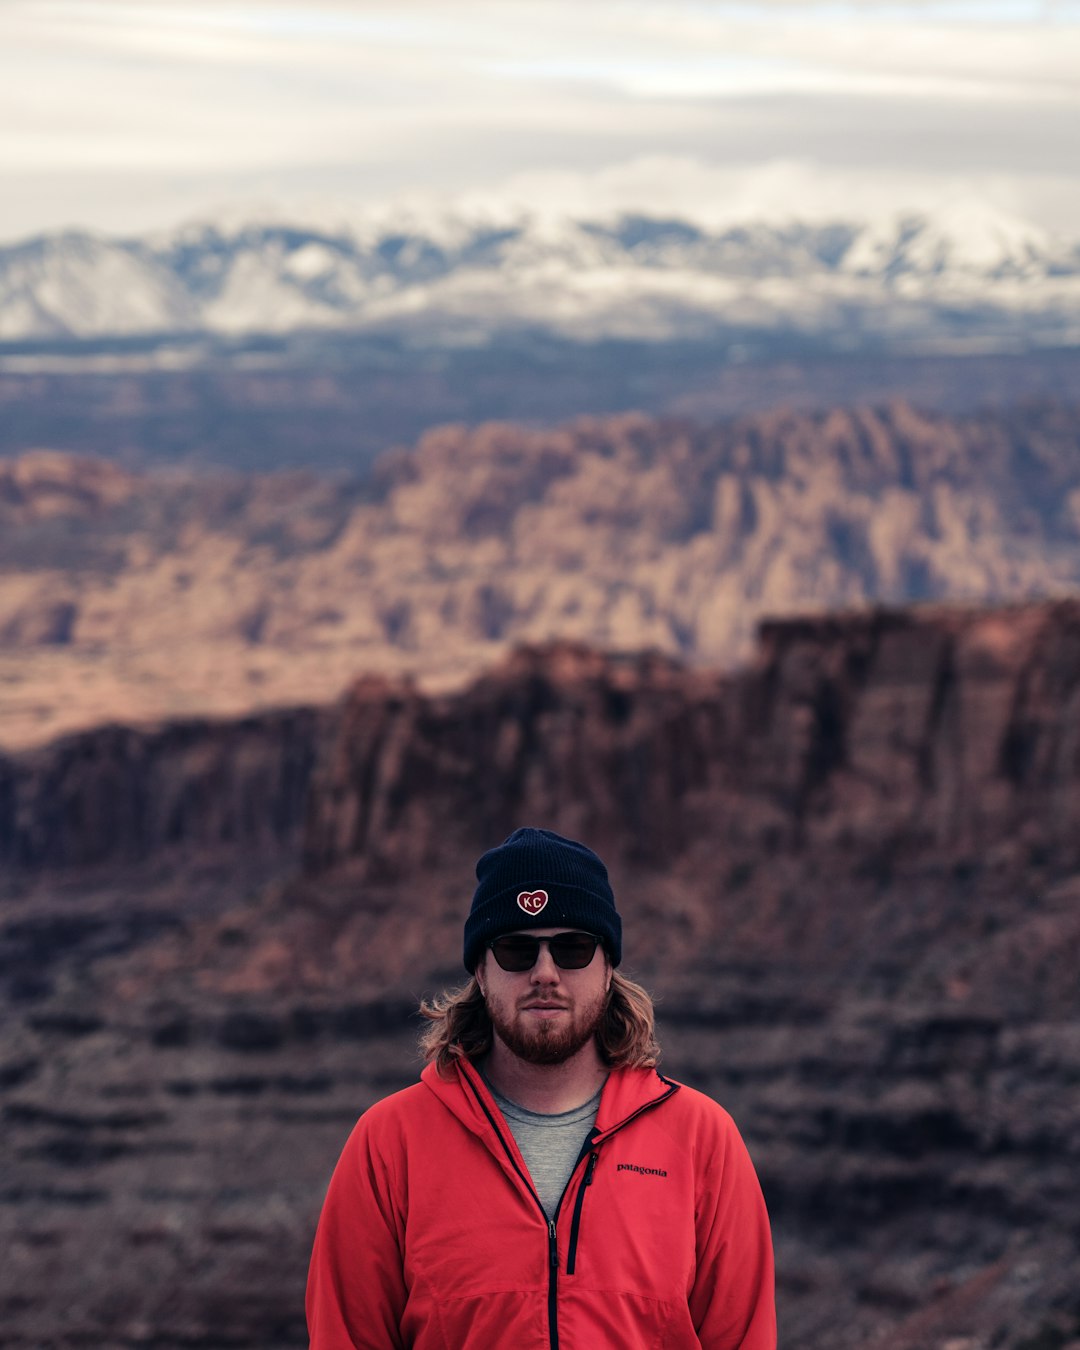 man wearing red zip jacket near mountains during day